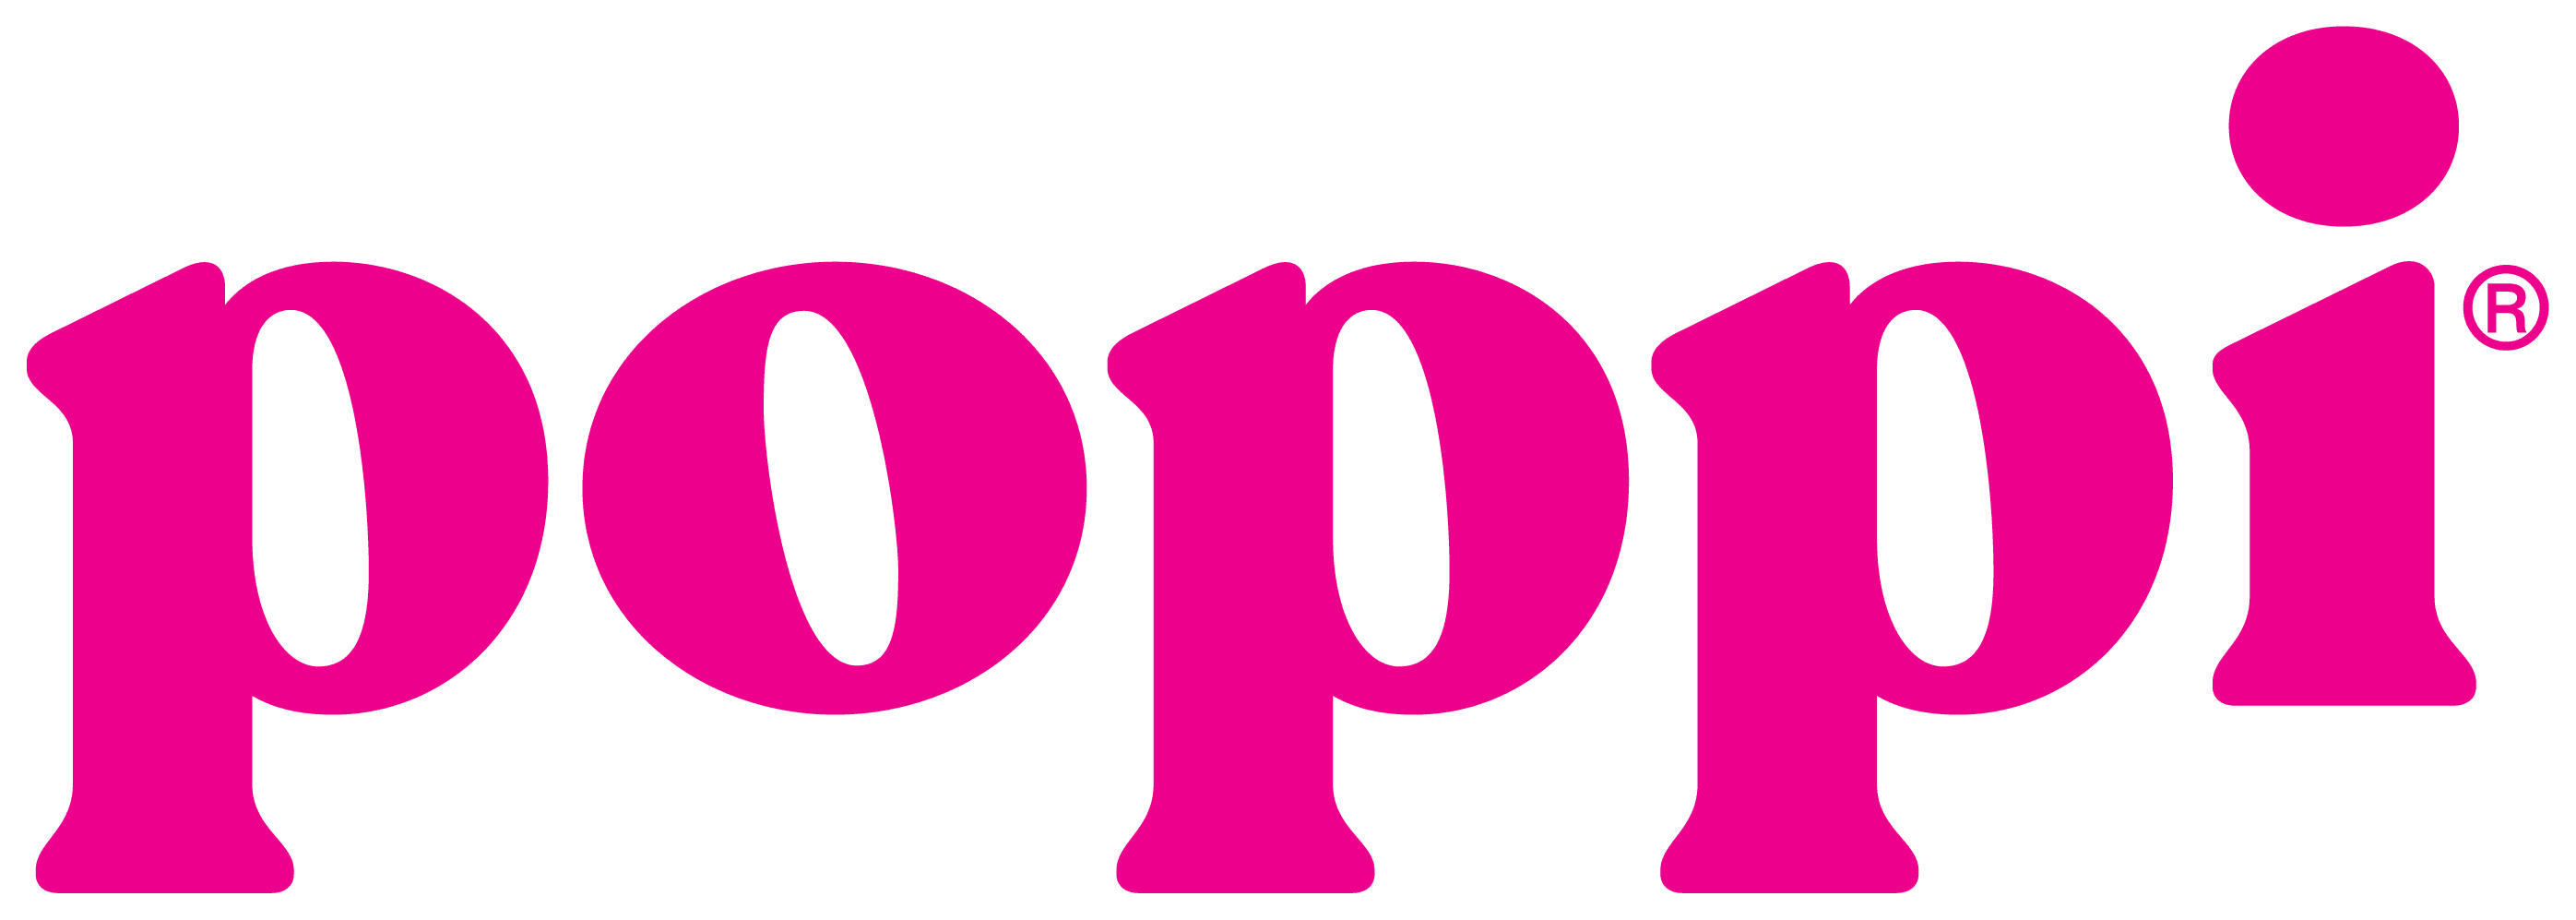 Poppi logo in hot pink